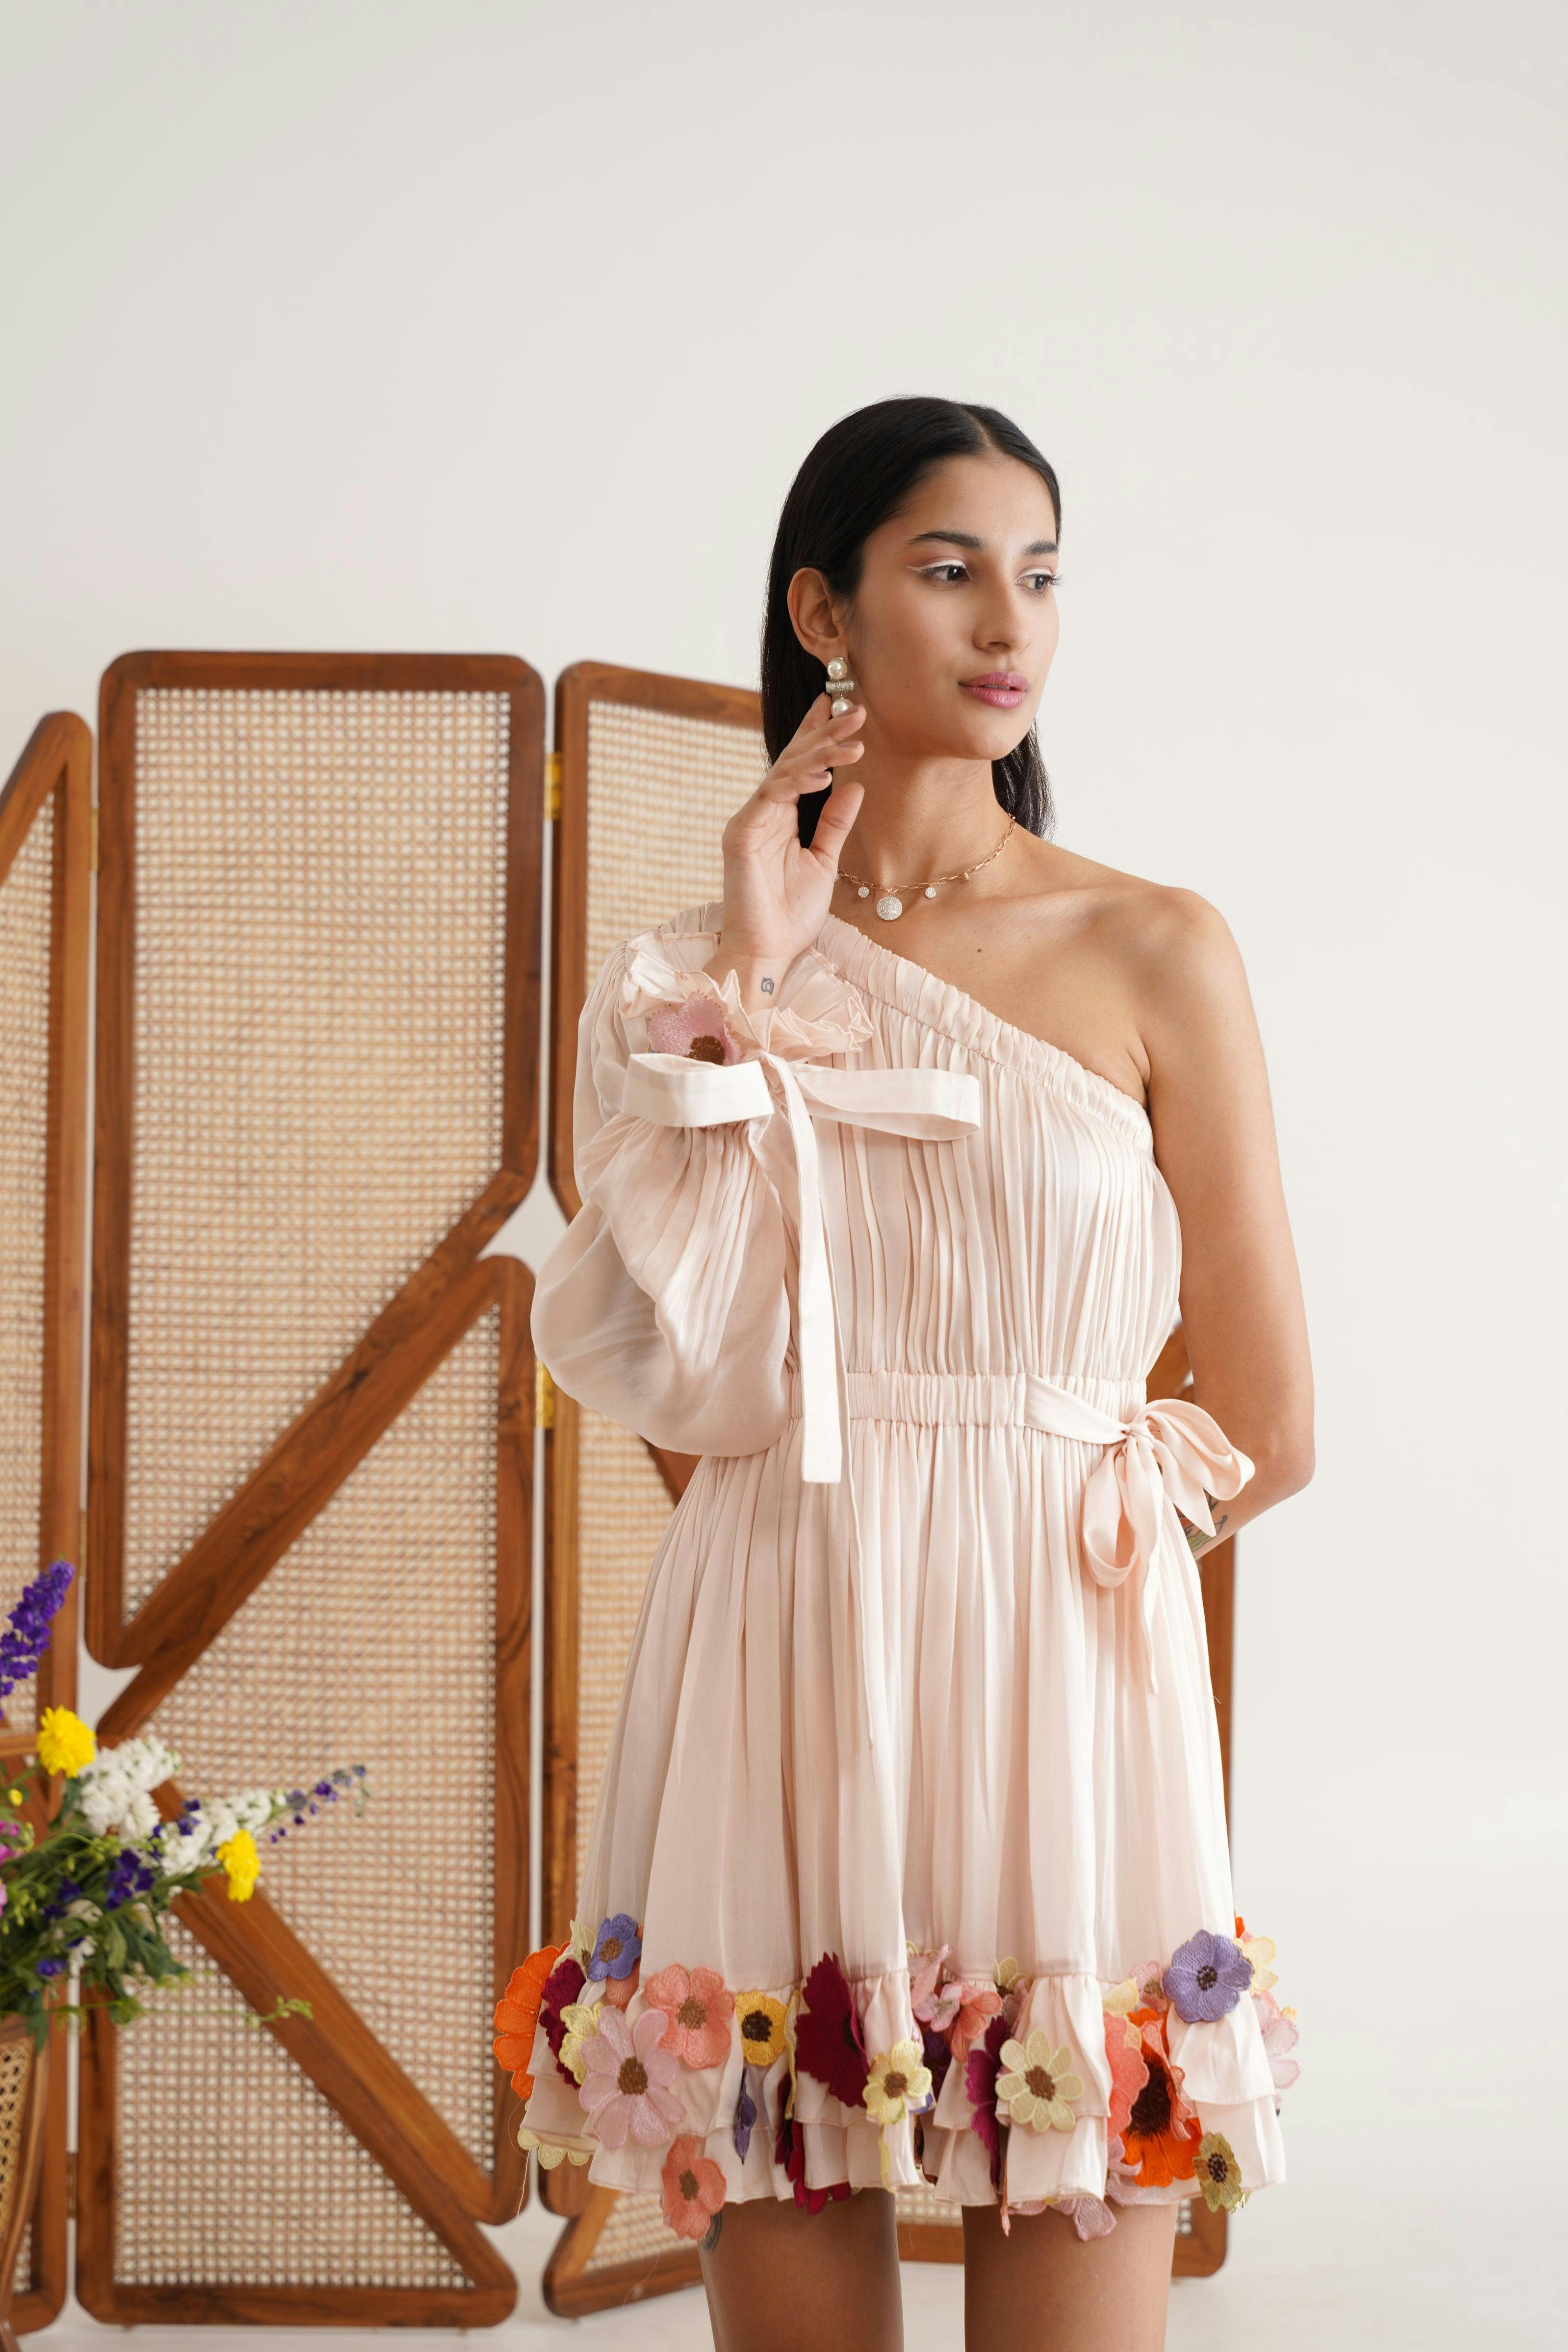 Hyacinth Dress, a product by Sunandini